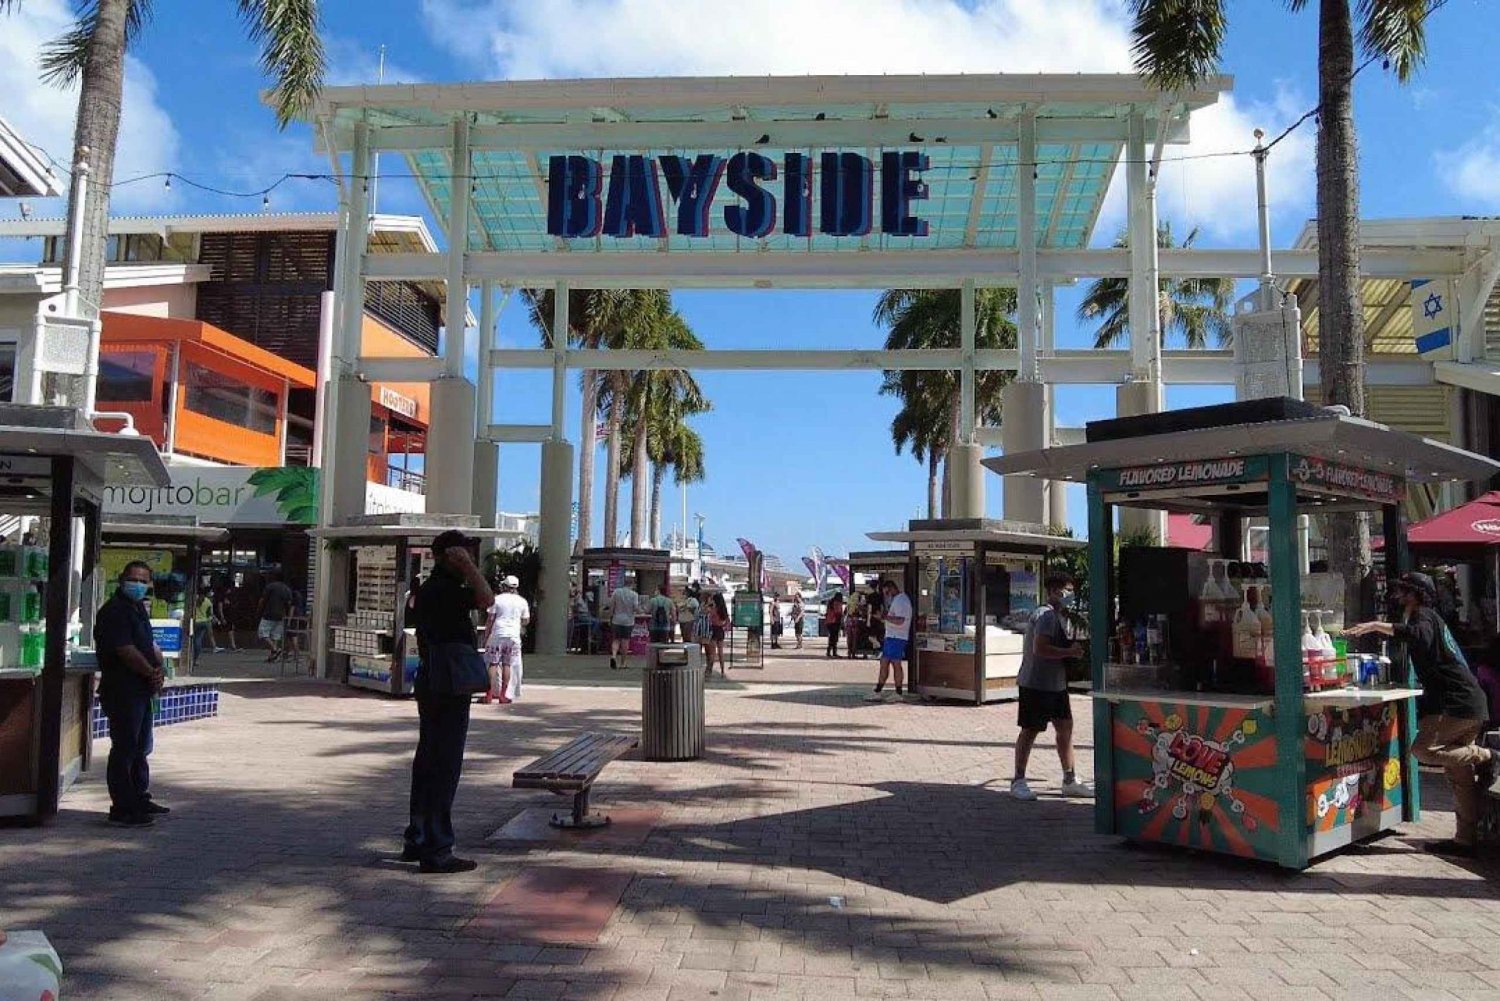 Miami: Biscayne Bay-båtcruise med transport inkludert